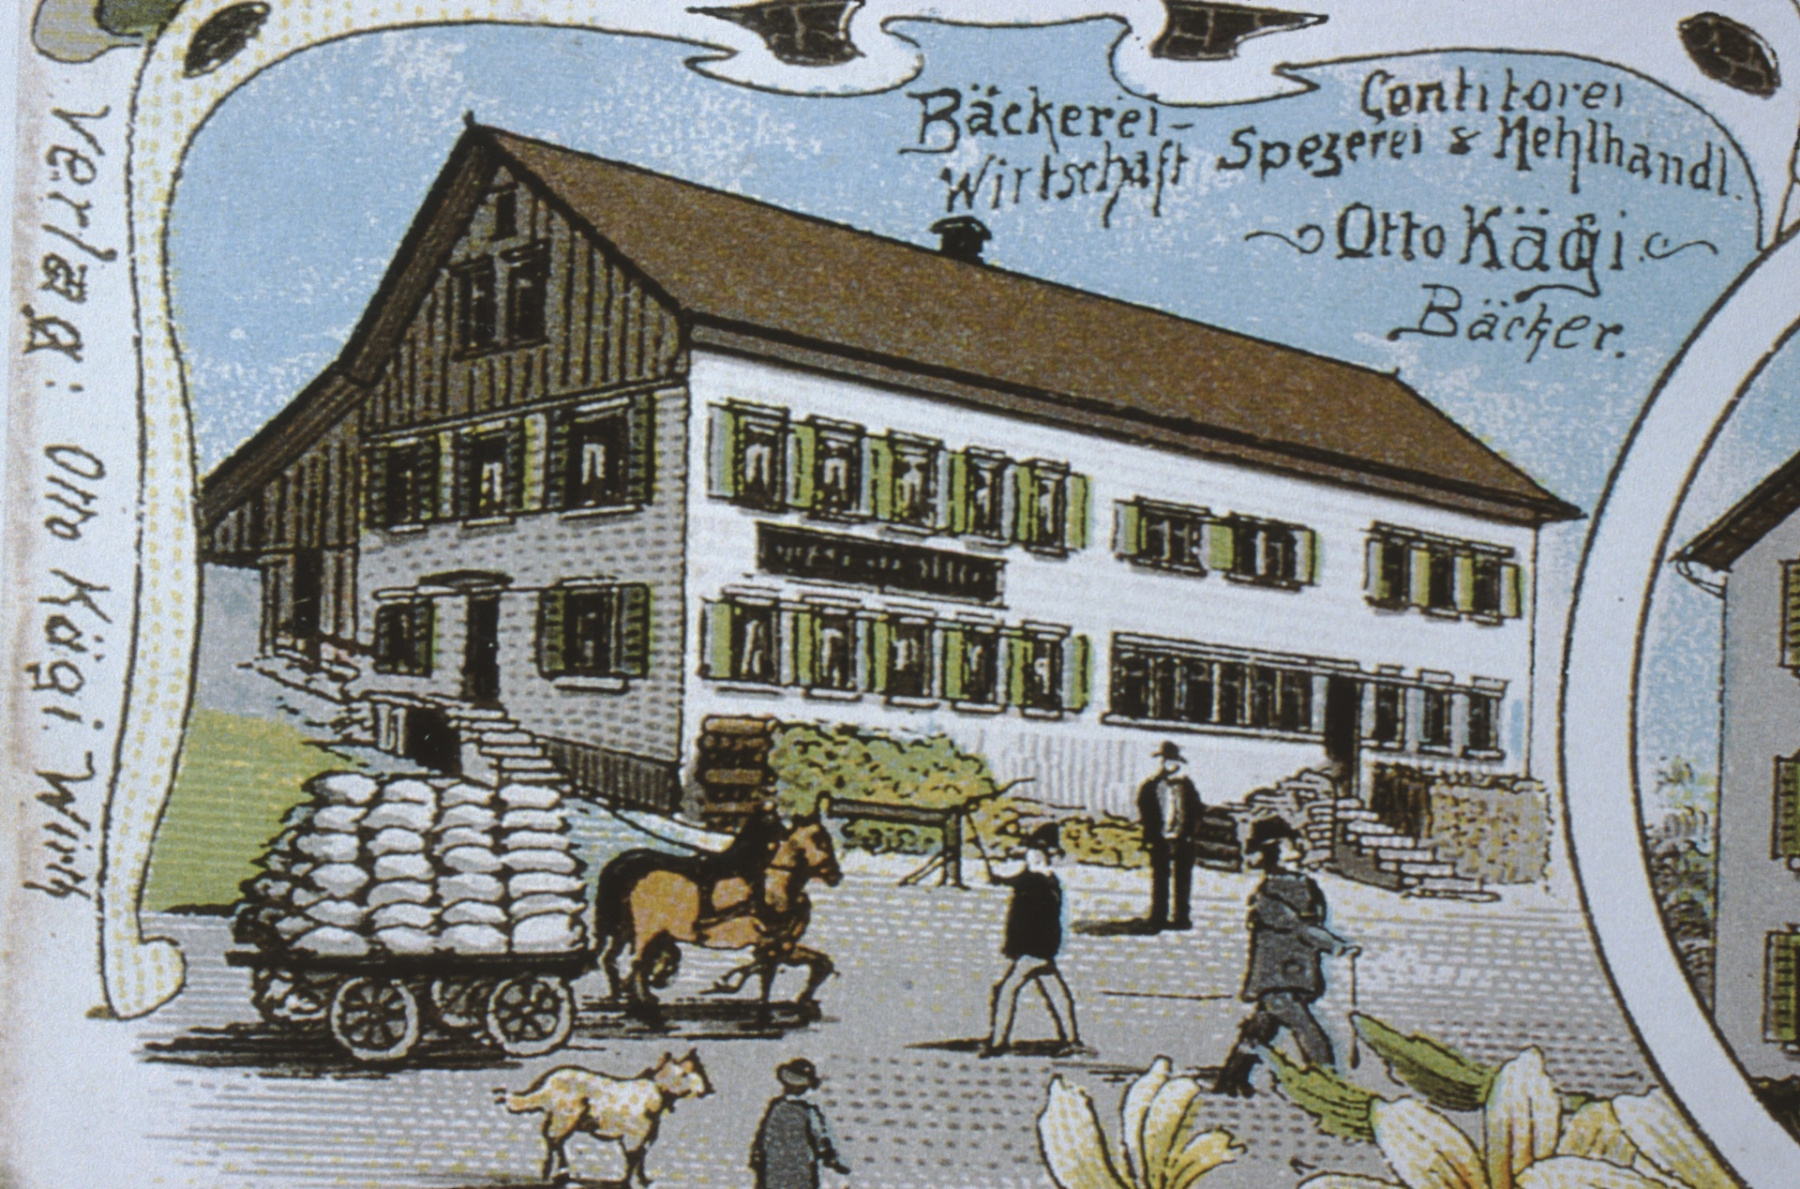 Ansichtskarte Bettswil, Wirtschaft, Spezerei und Mehlhandel, Otto Kägi, Bäcker (in Mittelbettswil, Bäckerei brennt 1911 ab)